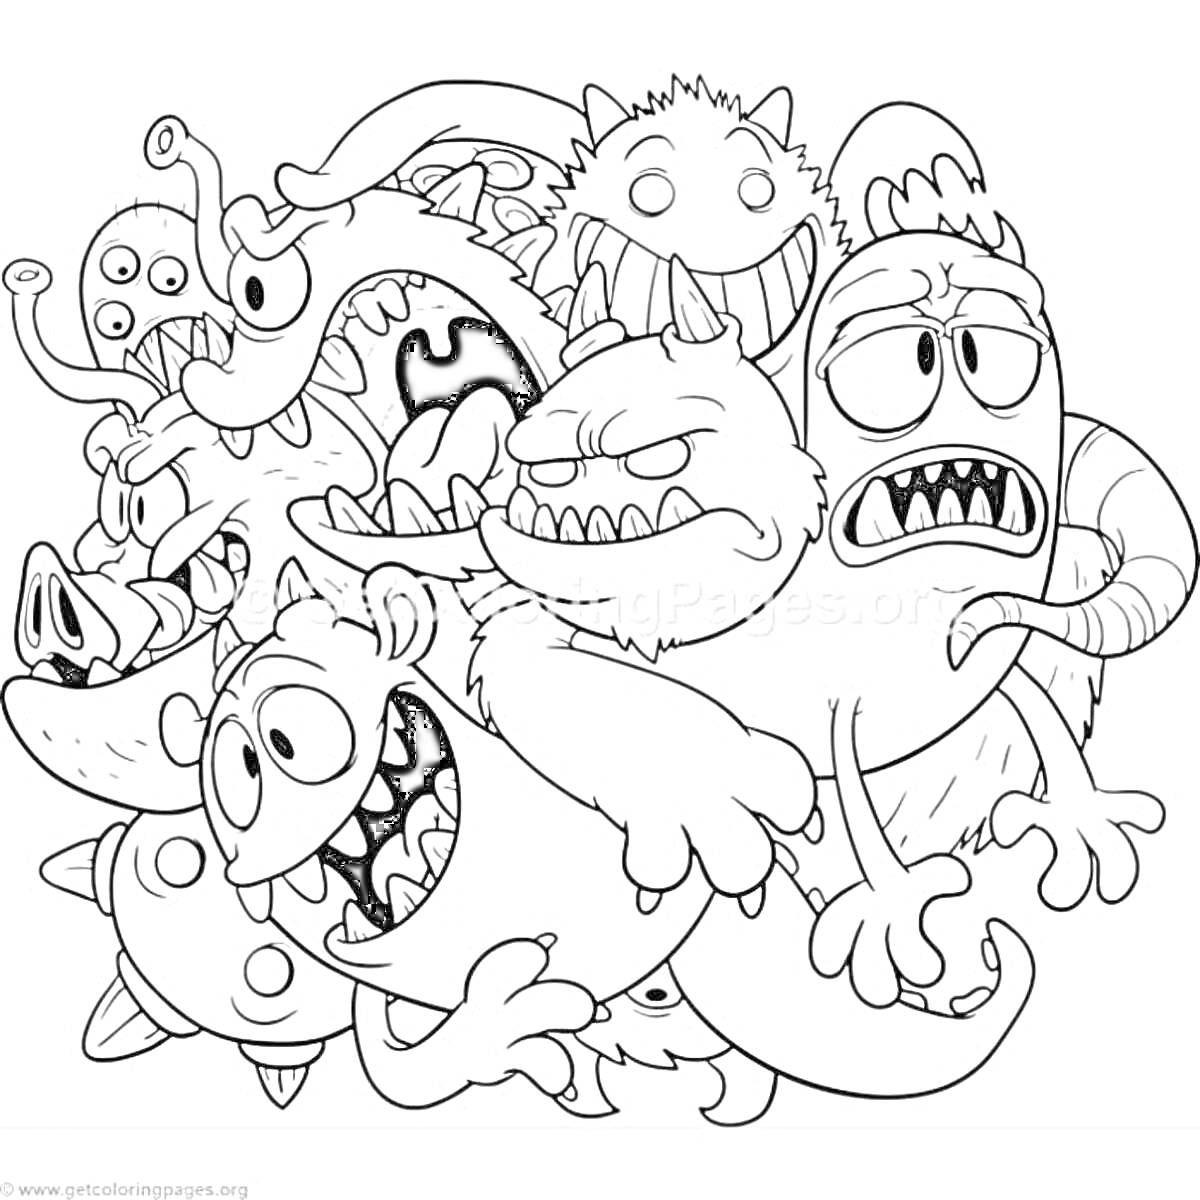 Раскраска Группа смешных монстров с разными выражениями лиц и эмоциями